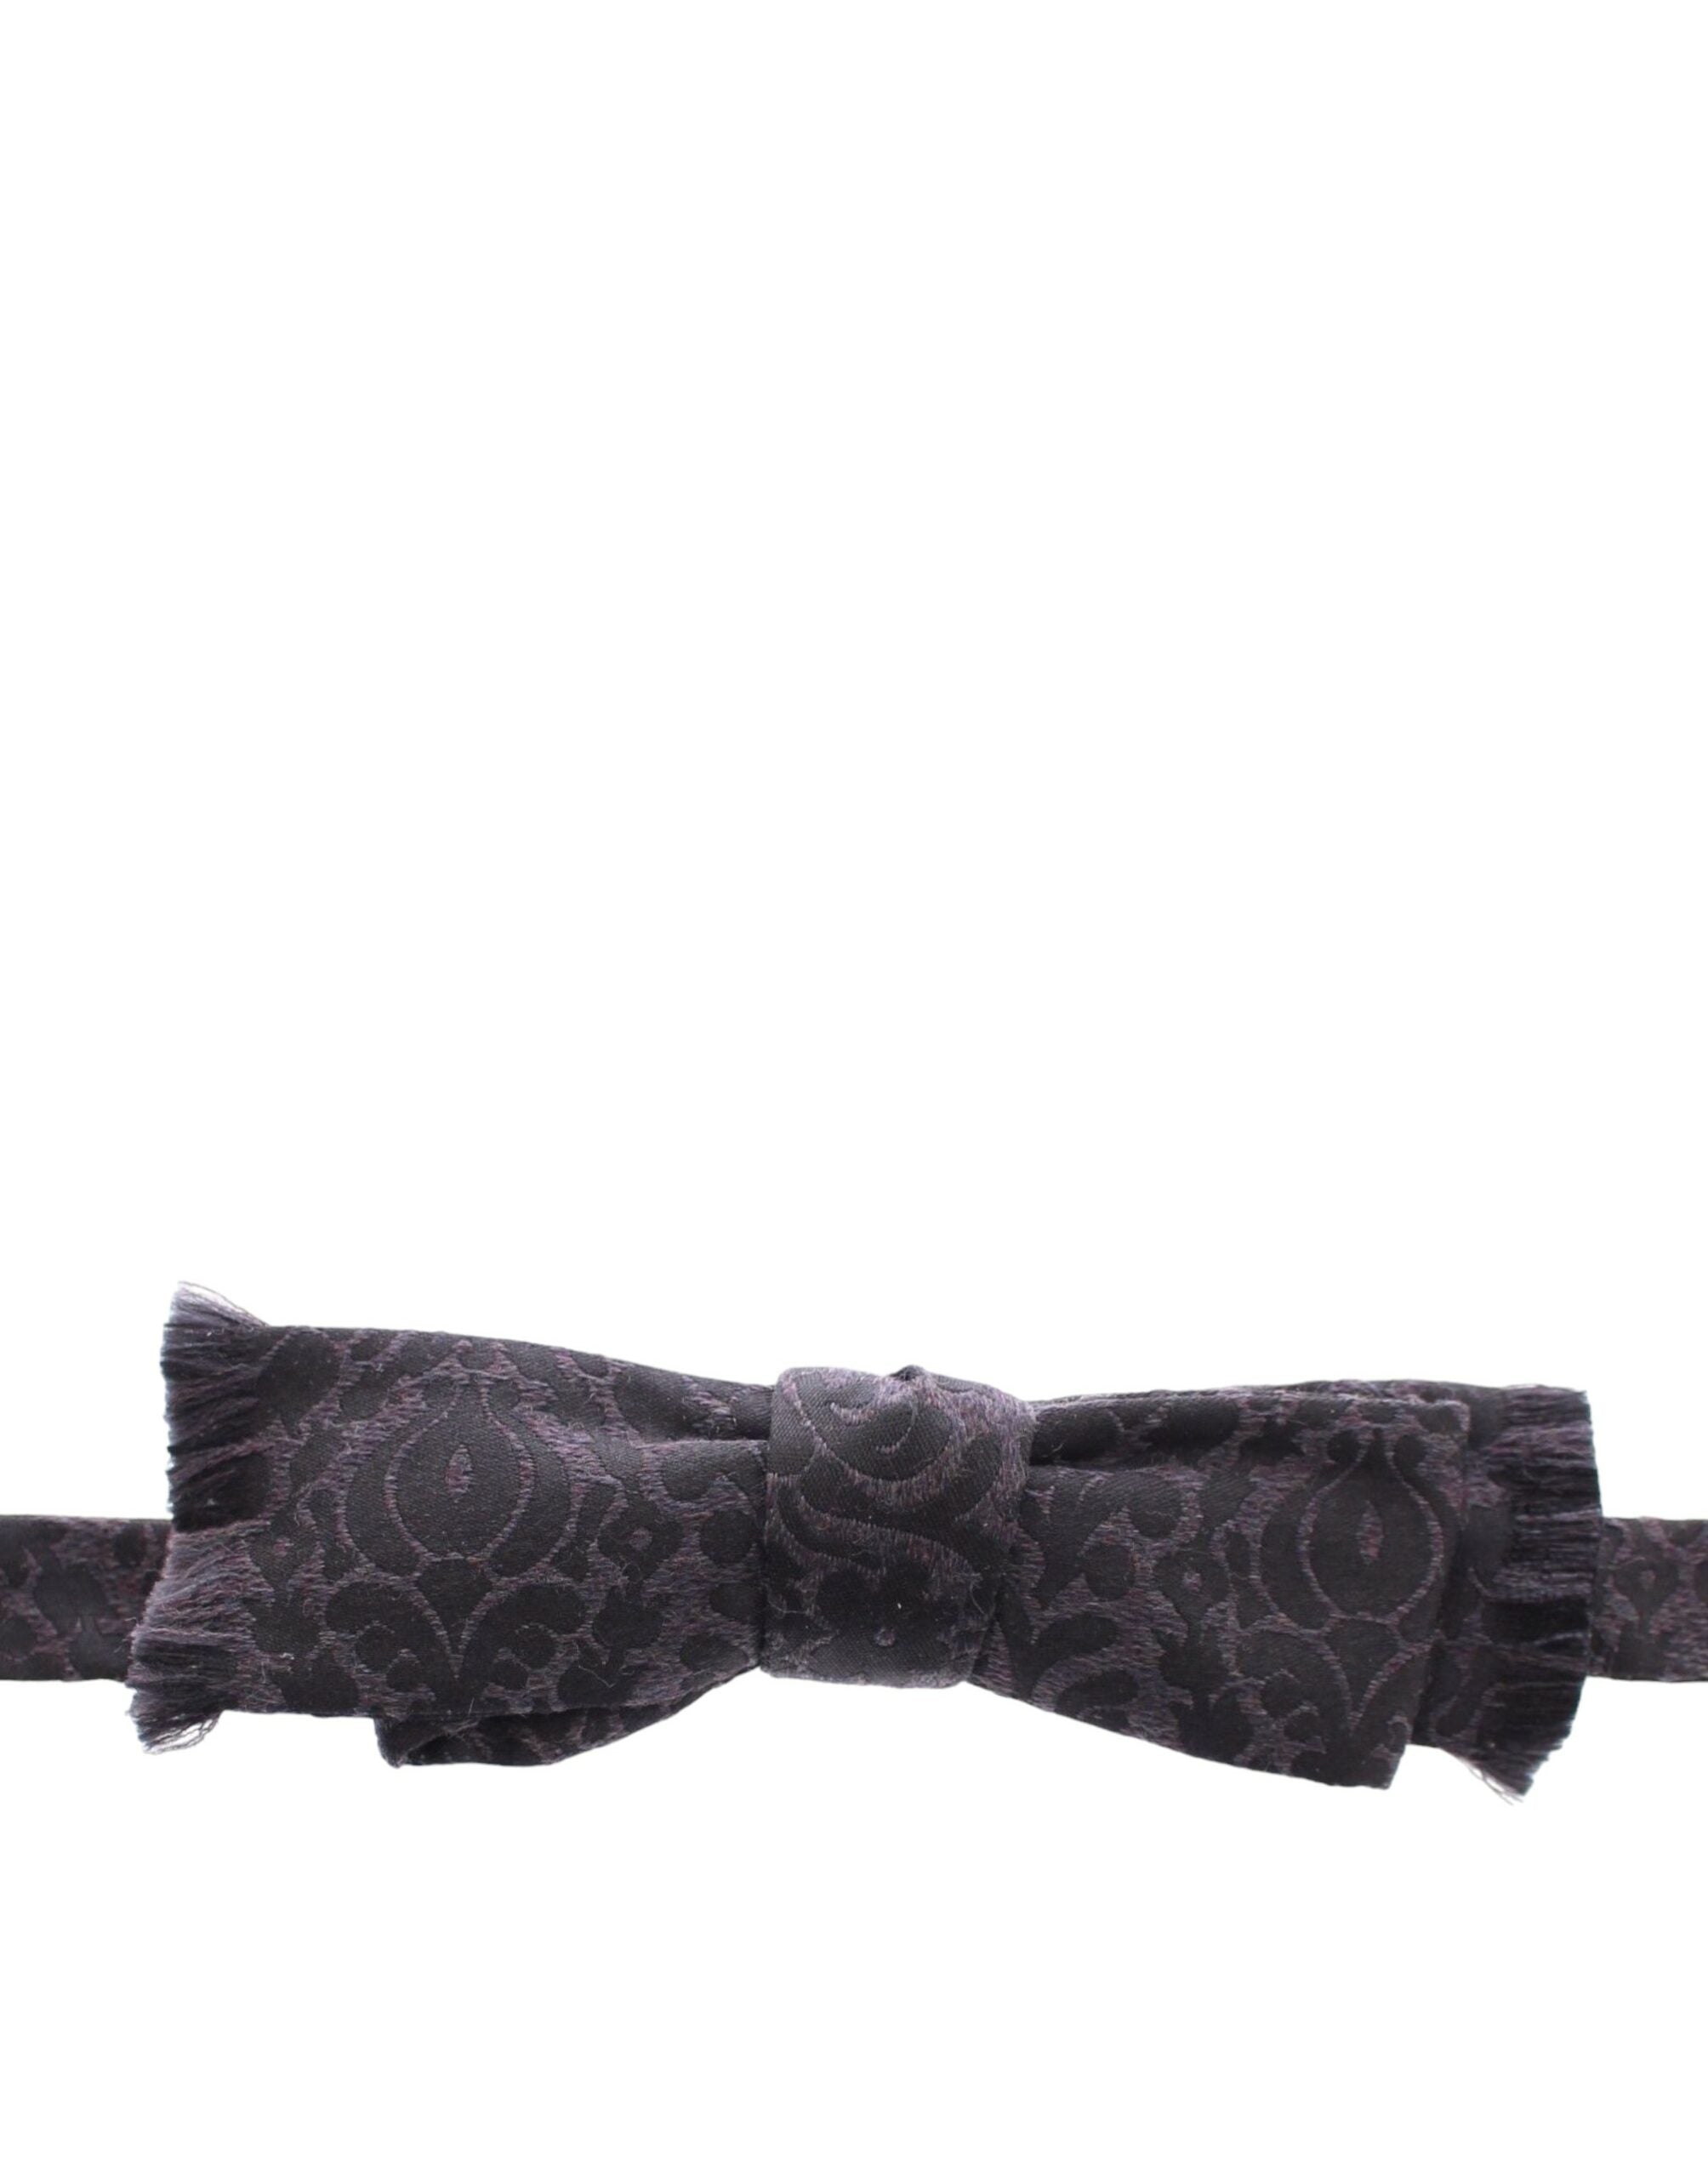 Dolce & Gabbana Crystal-Embellished Waist Belt